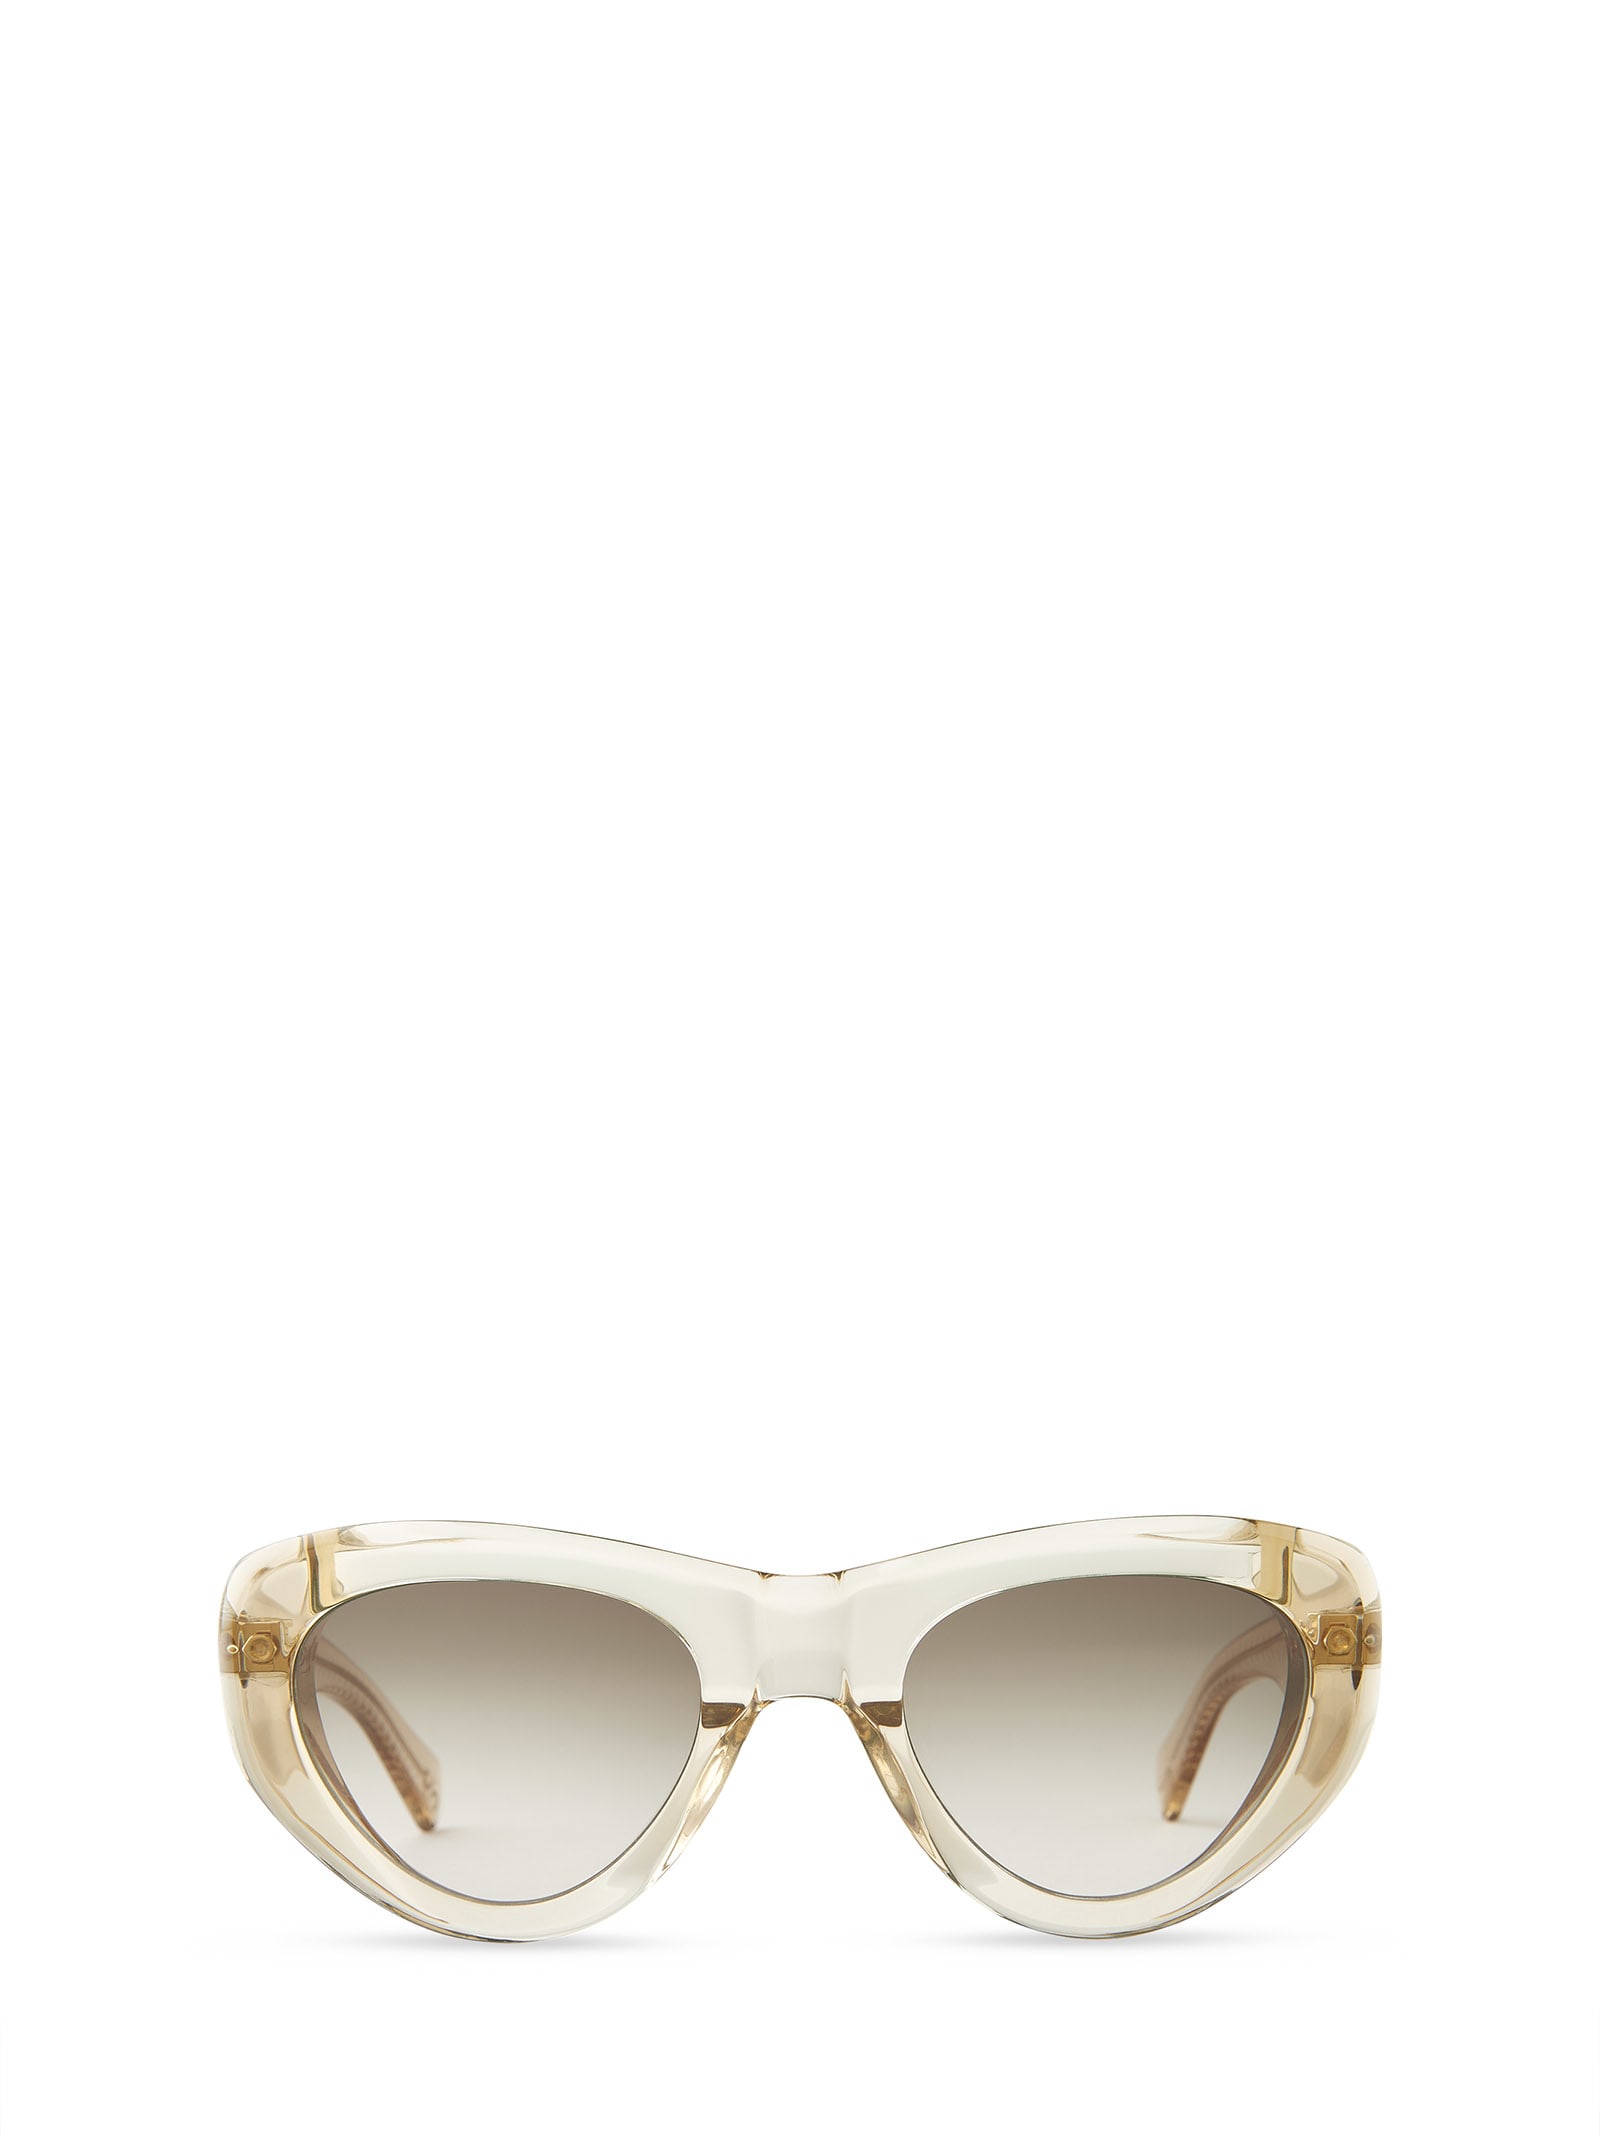 Reveler S Chandelier-12k White Gold Sunglasses